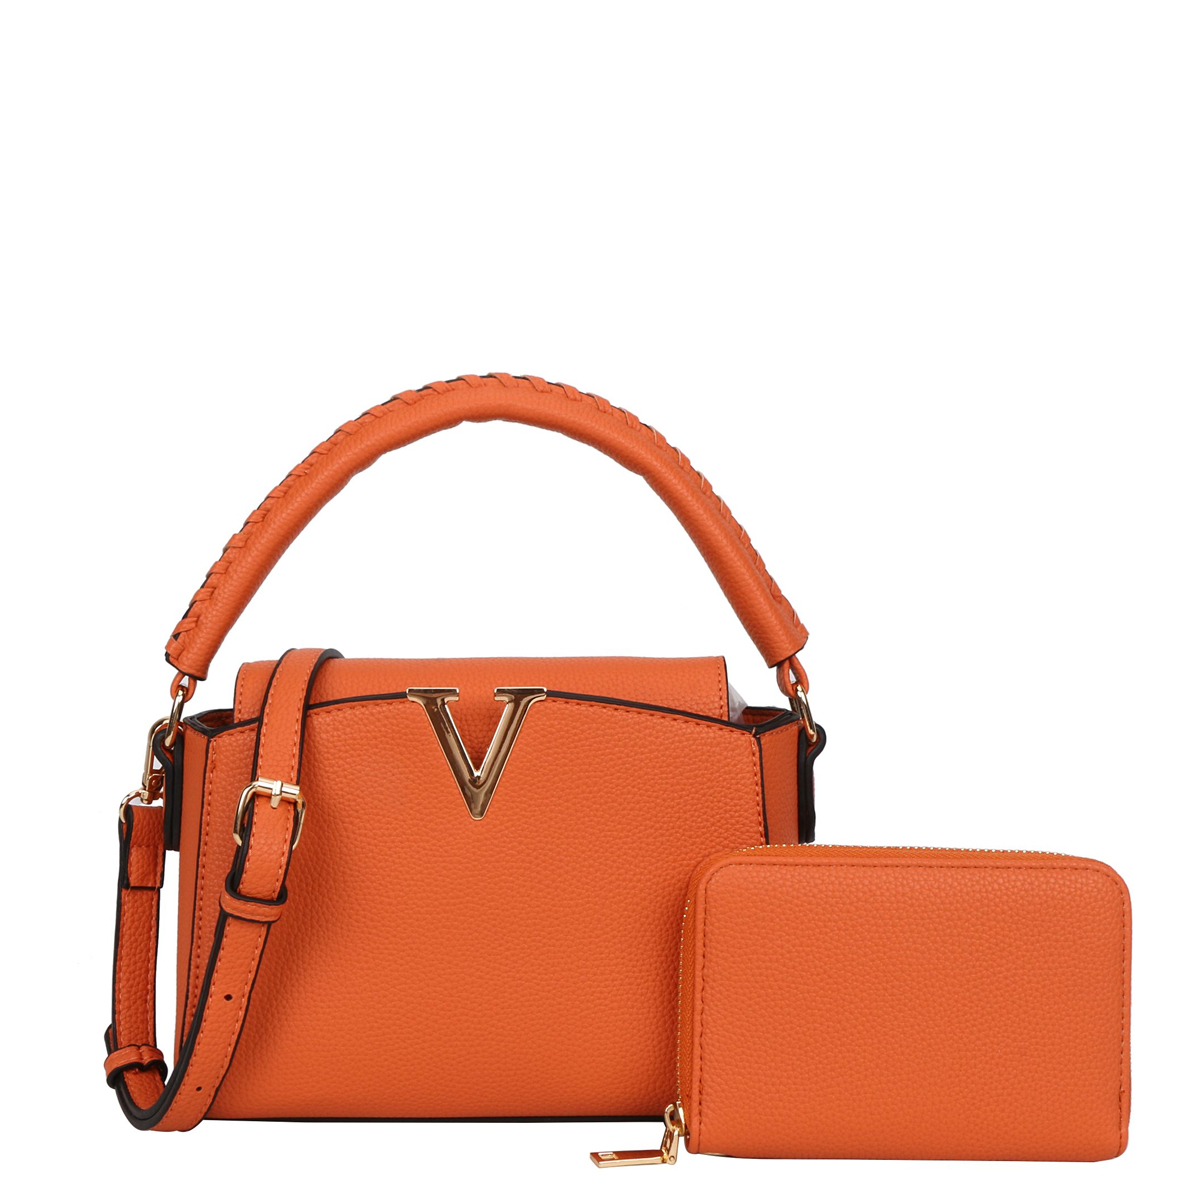 2 pcs sets handbags > Classic Bags, Monogram > Mezon Handbags